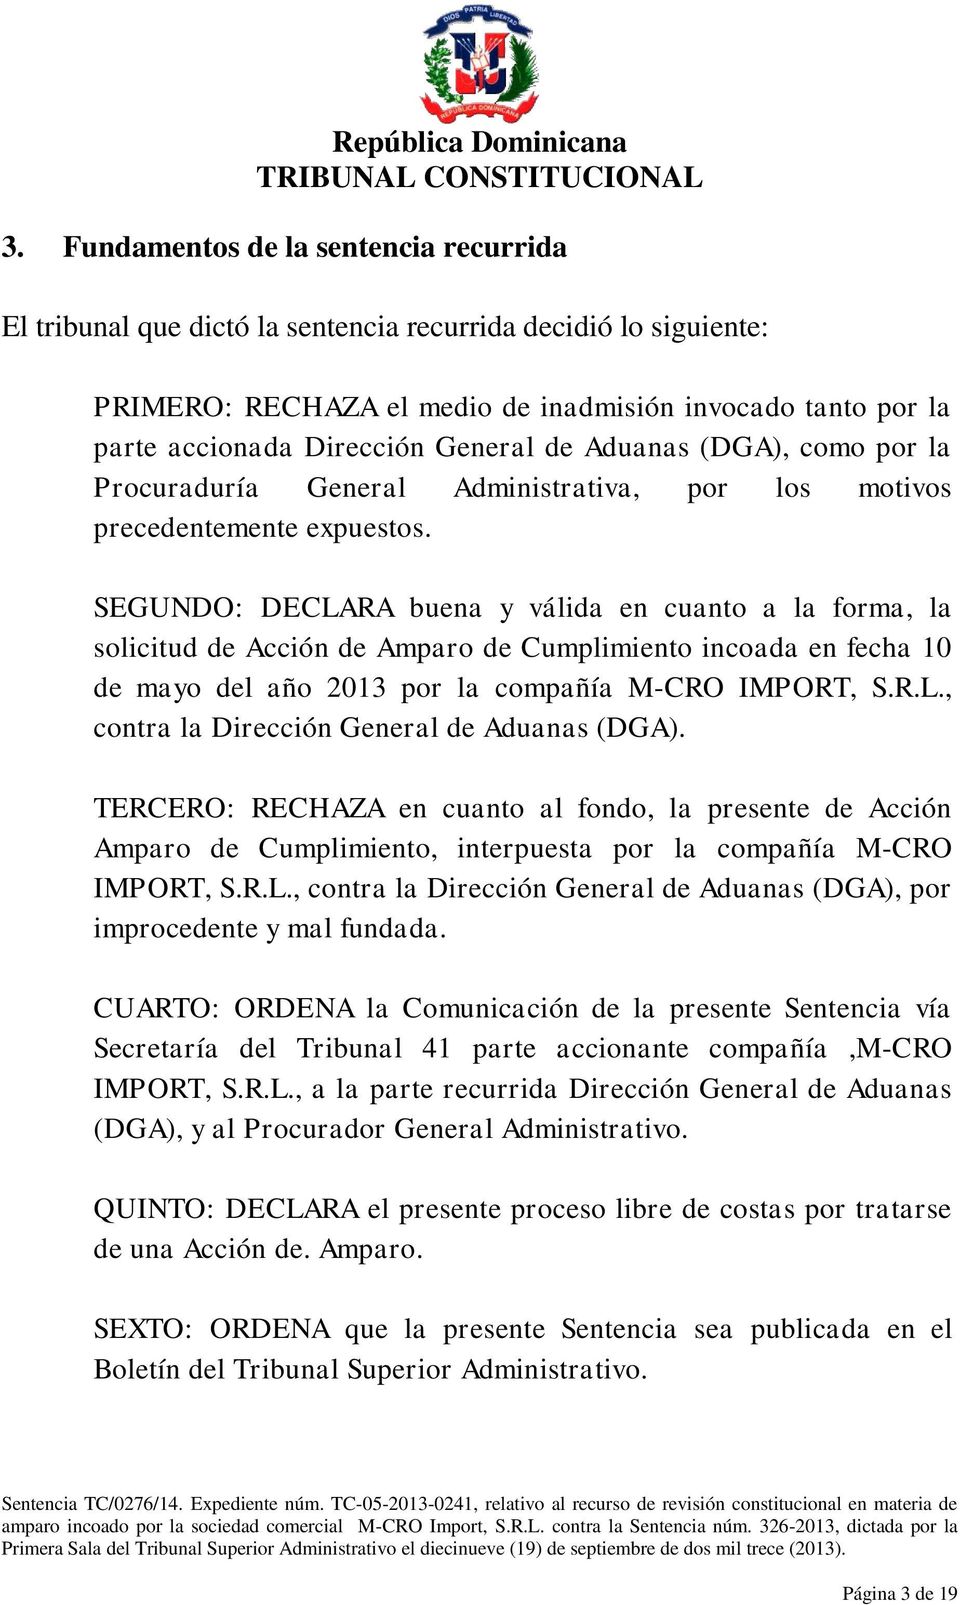 SEGUNDO: DECLARA buena y válida en cuanto a la forma, la solicitud de Acción de Amparo de Cumplimiento incoada en fecha 10 de mayo del año 2013 por la compañía M-CRO IMPORT, S.R.L., contra la Dirección General de Aduanas (DGA).